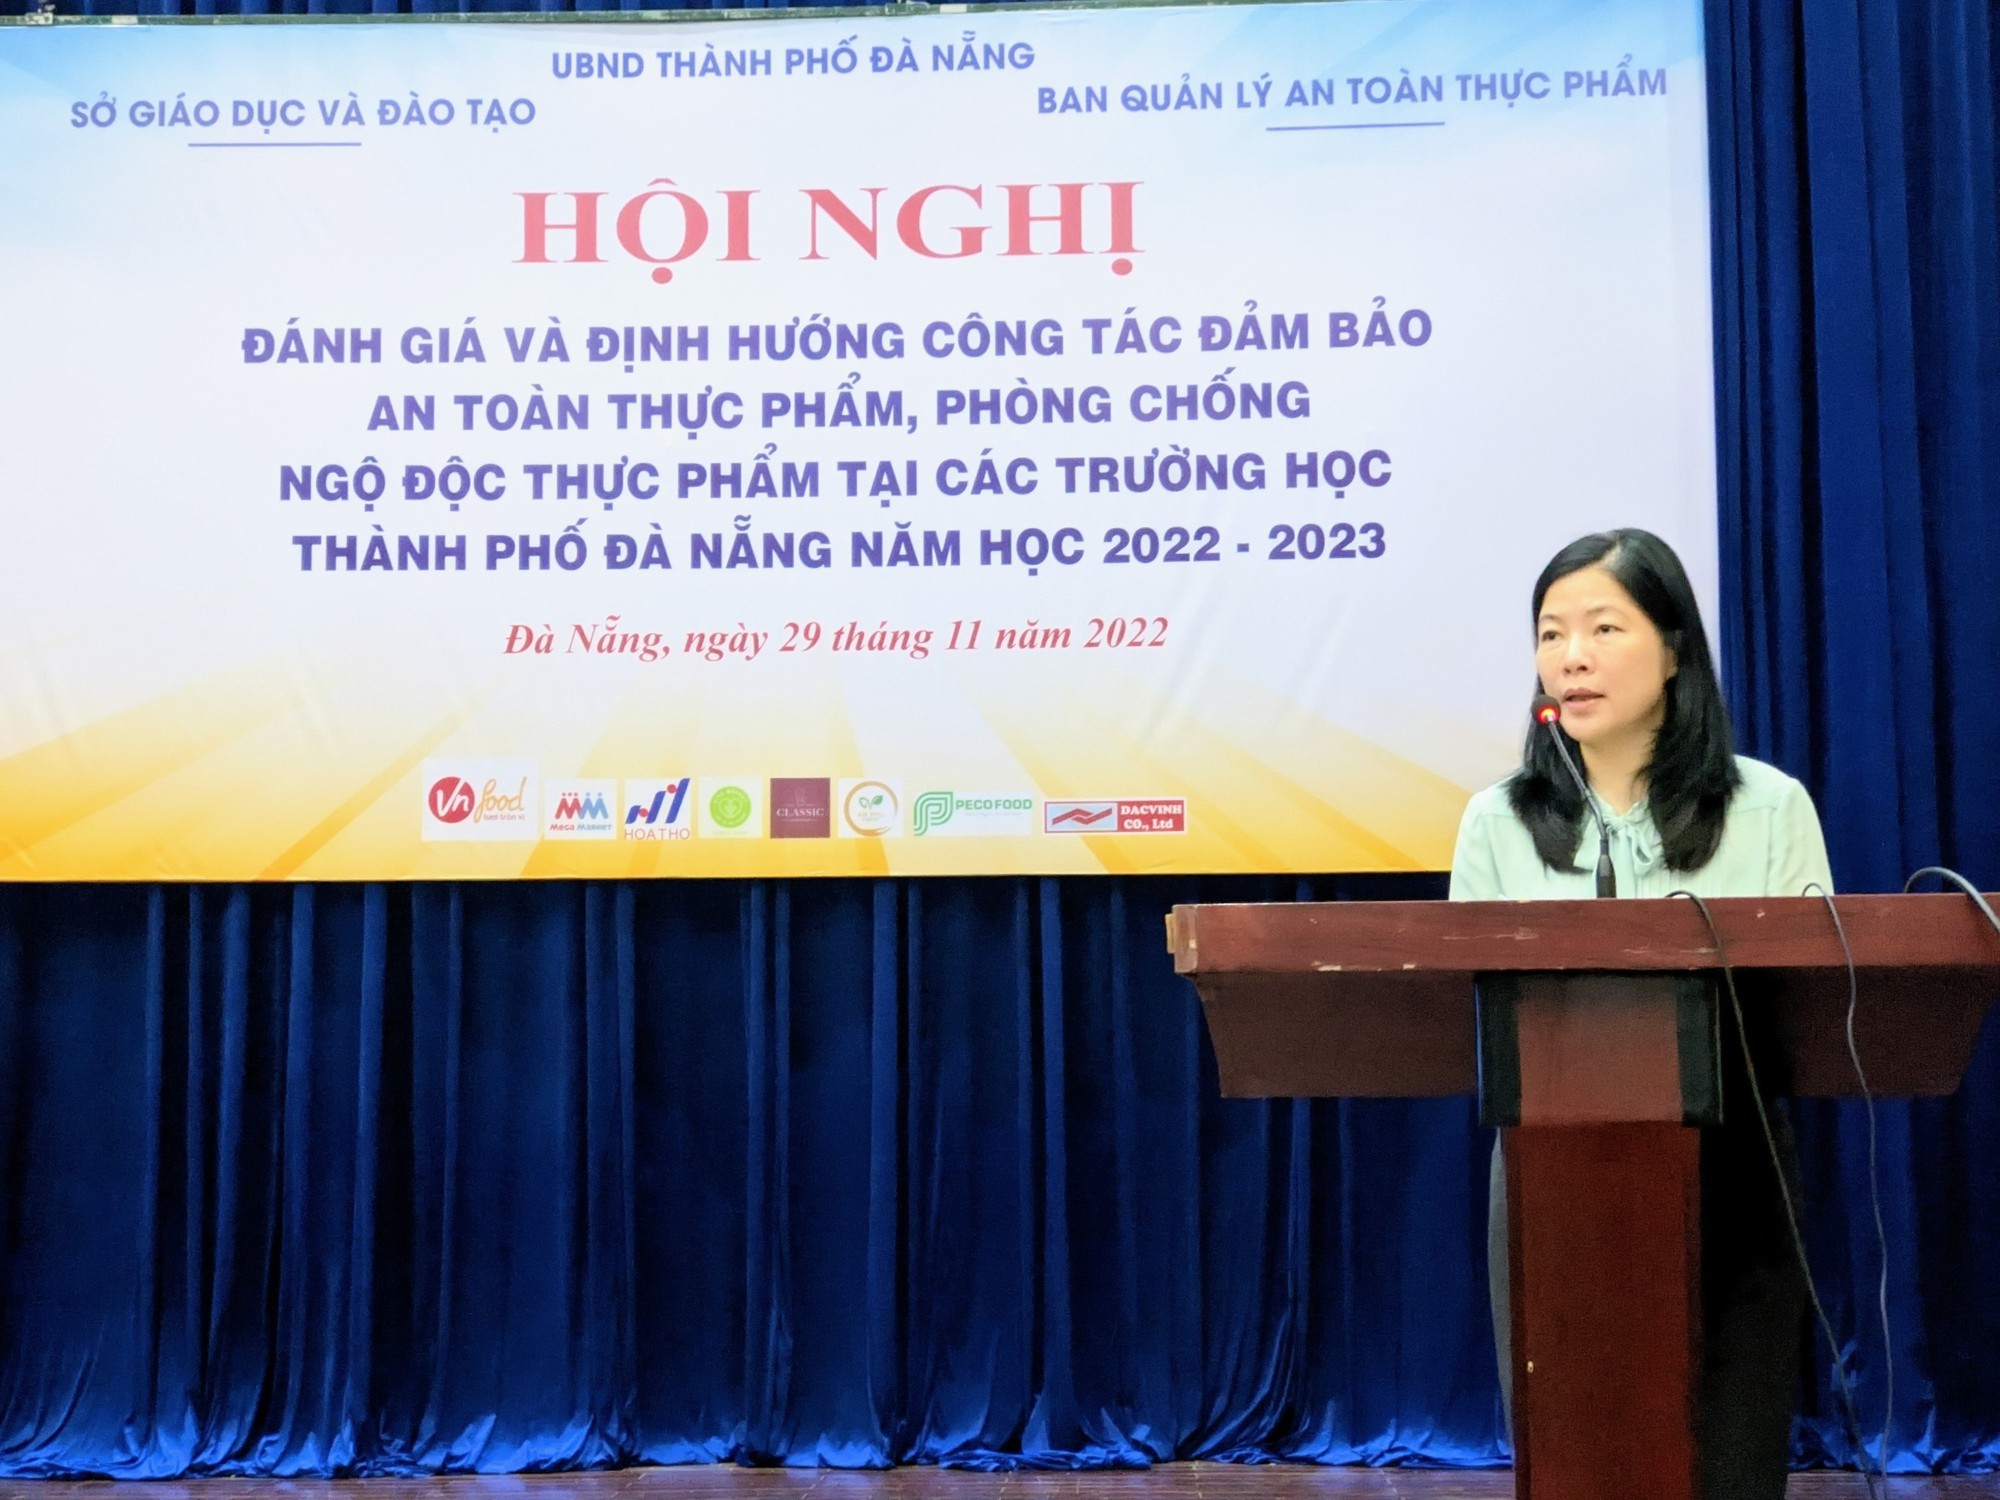 Đà Nẵng: Tổ chức hội nghị công tác đảm bảo an toàn thực phẩm, phòng chống ngộ độc thực phẩm tại các trường học - Ảnh 5.